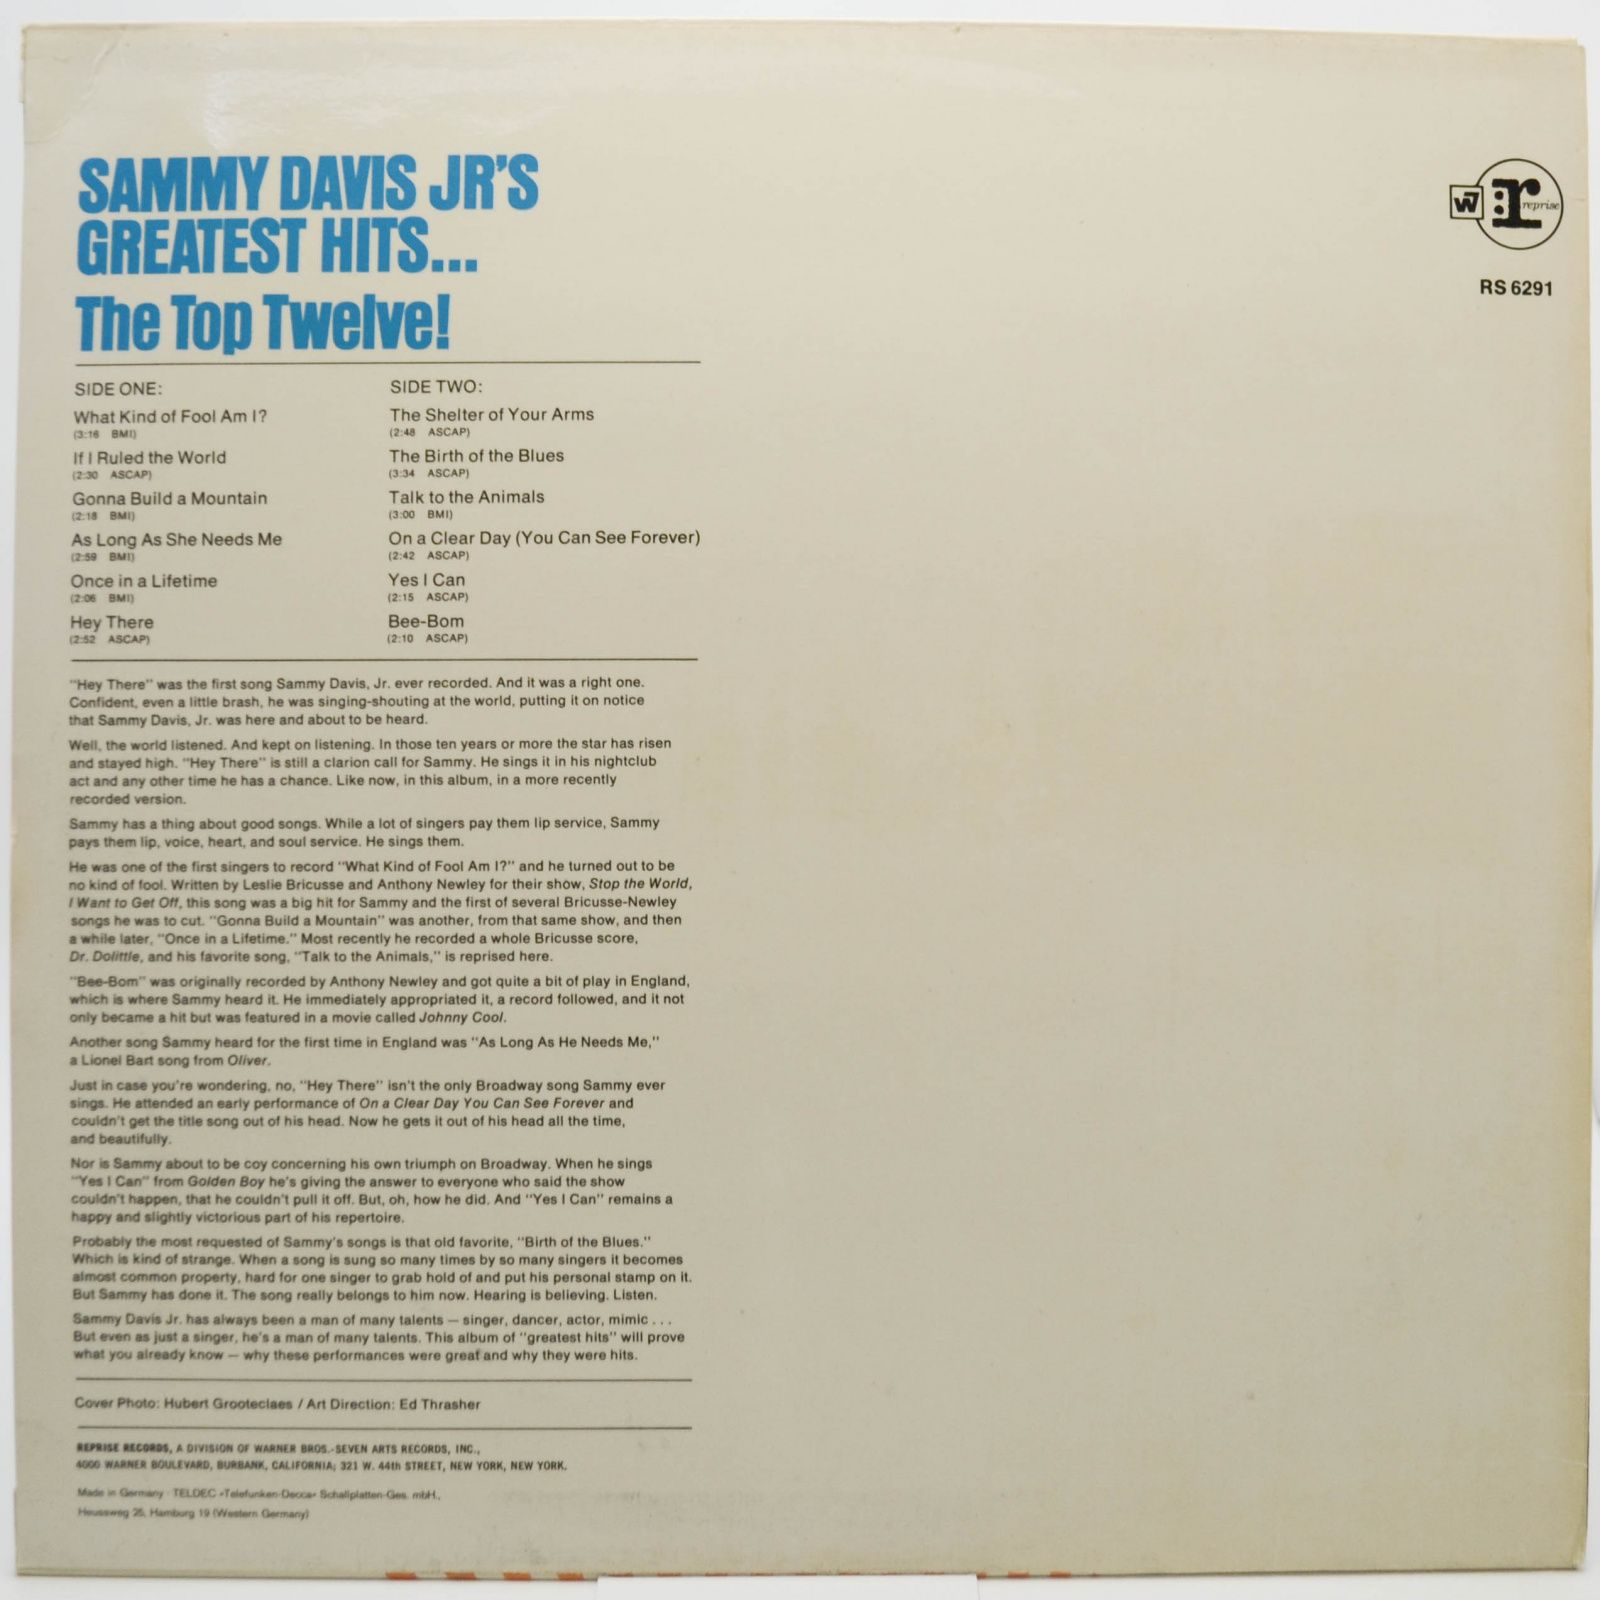 Sammy Davis Jr. — Sammy Davis Jr.'s Greatest Hits, 1968